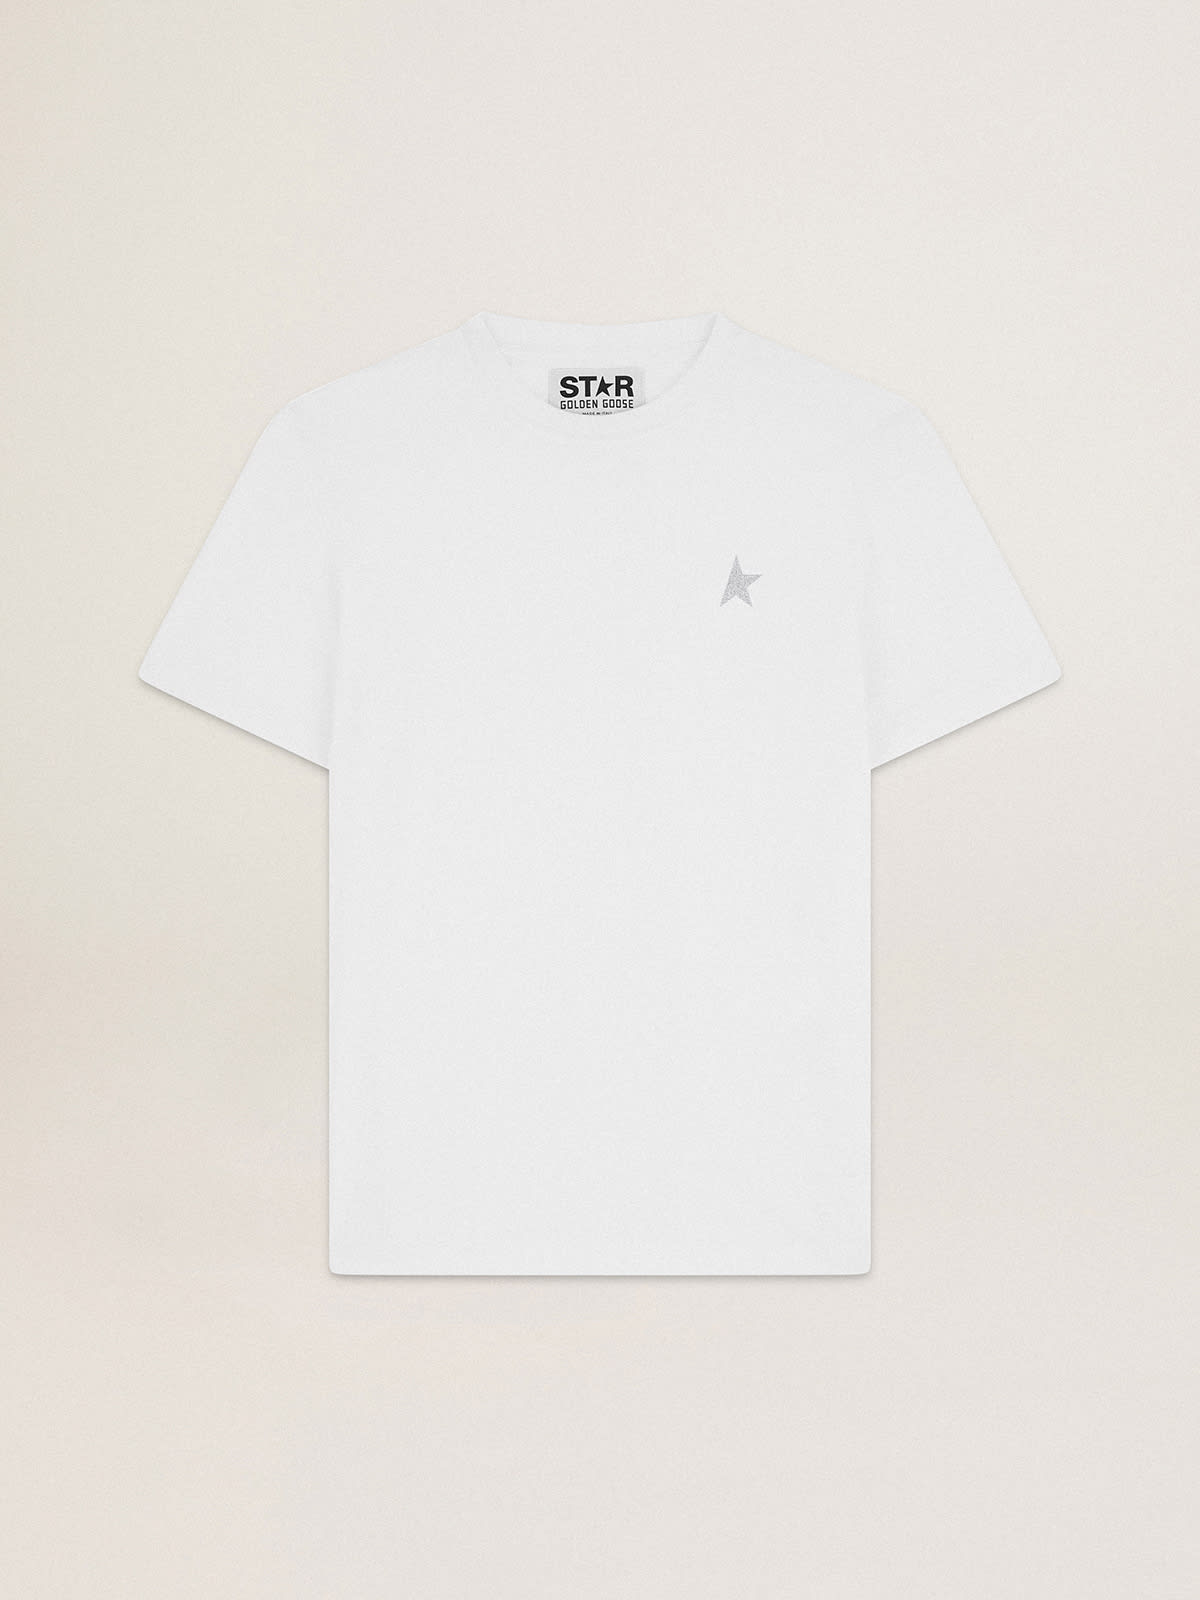 Golden Goose - T-shirt bianca Collezione Star con stella in glitter argento sul davanti in 